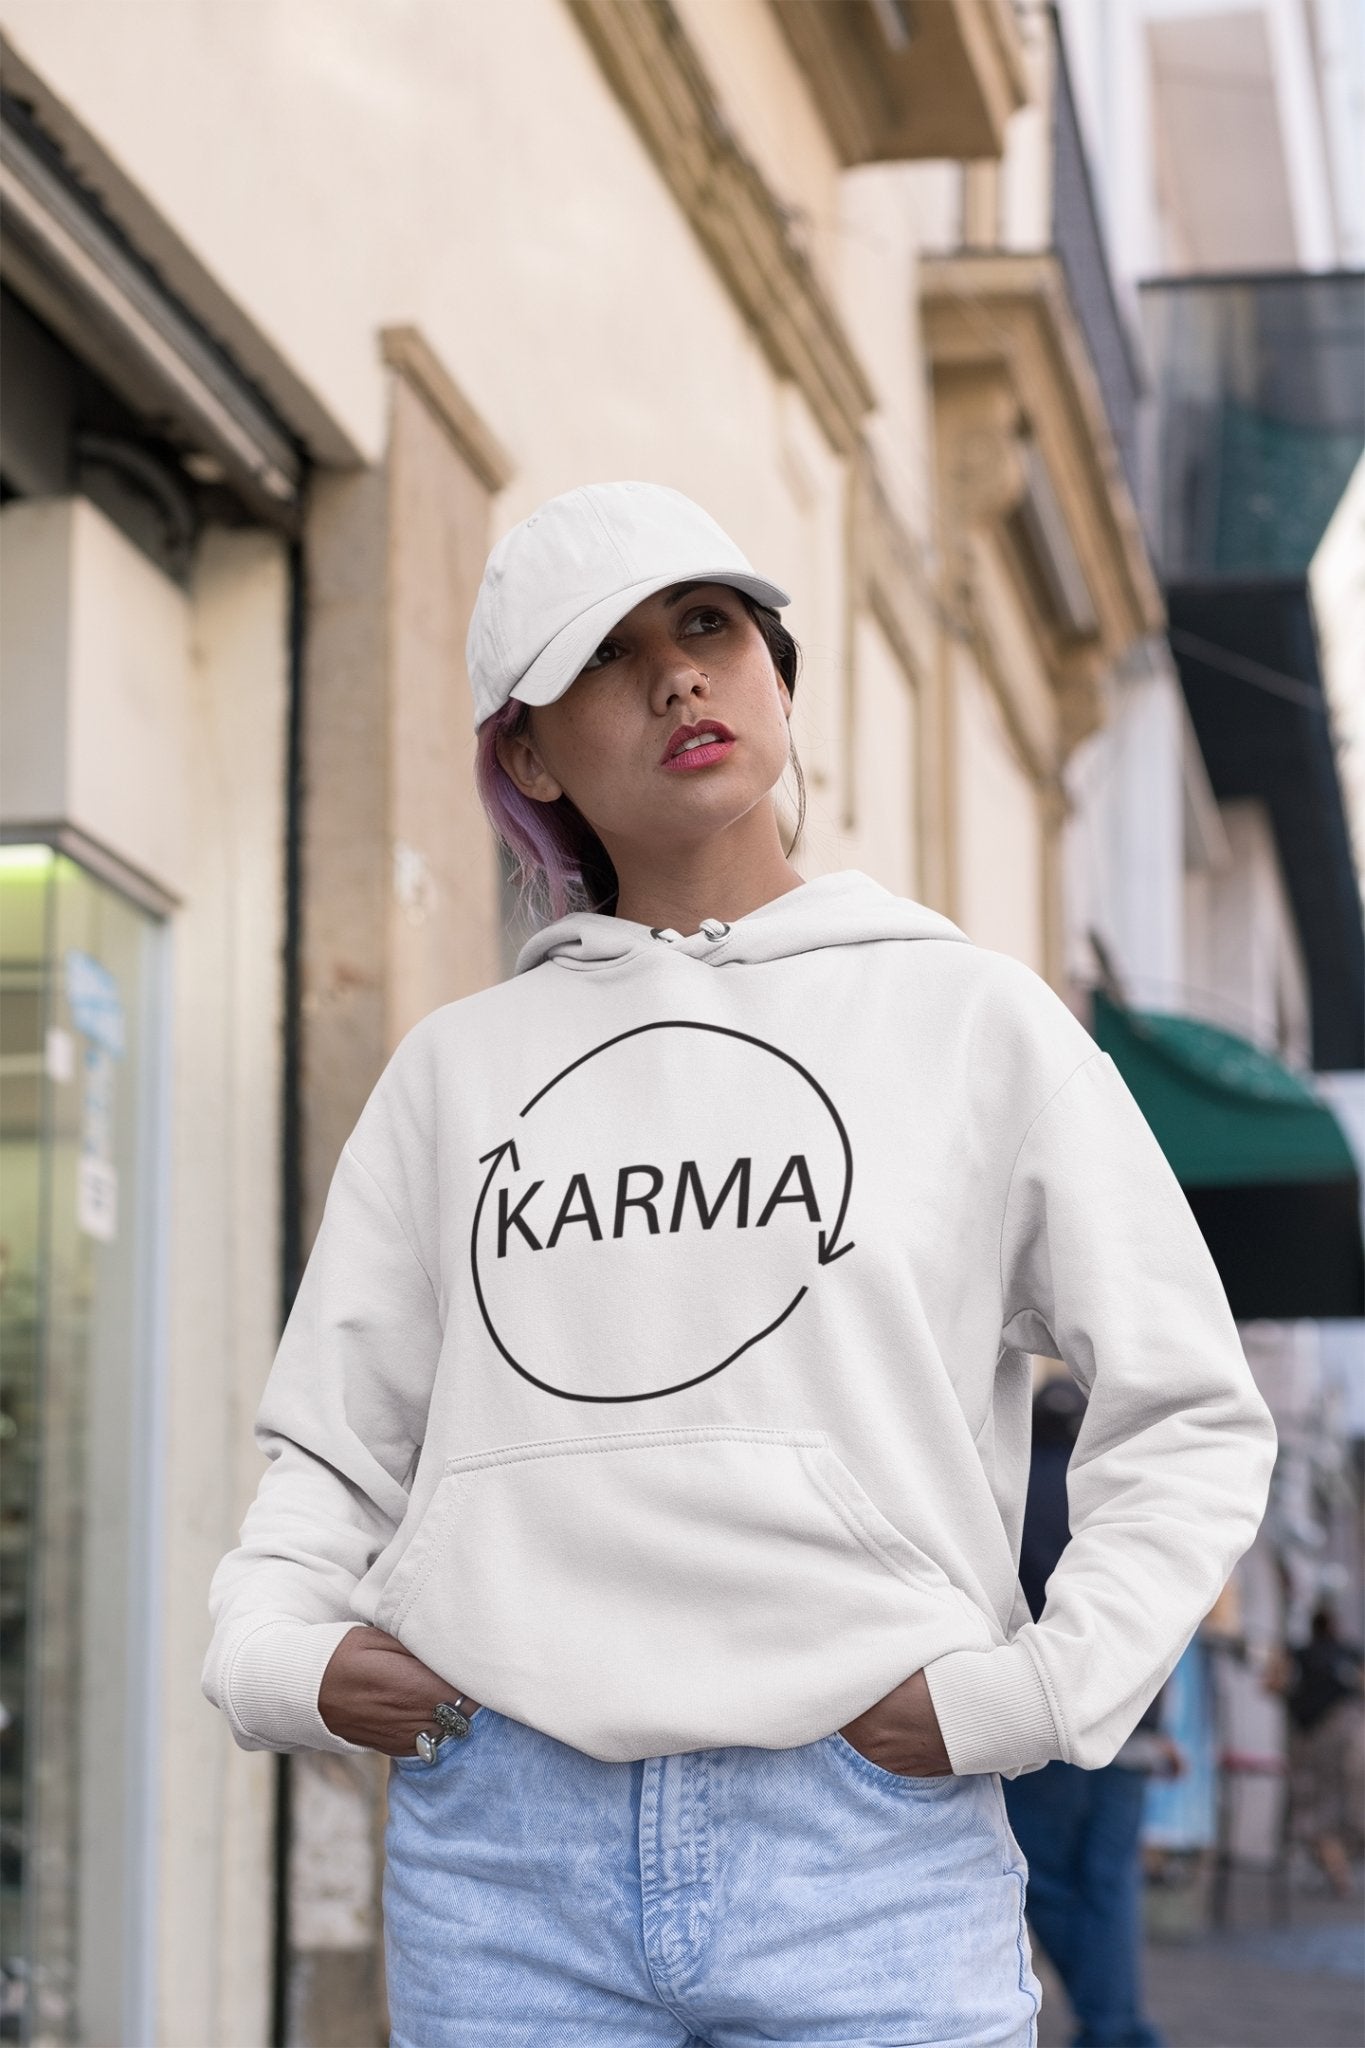 Karma Typography Hoodies for Women-FunkyTeesClub - Funky Tees Club